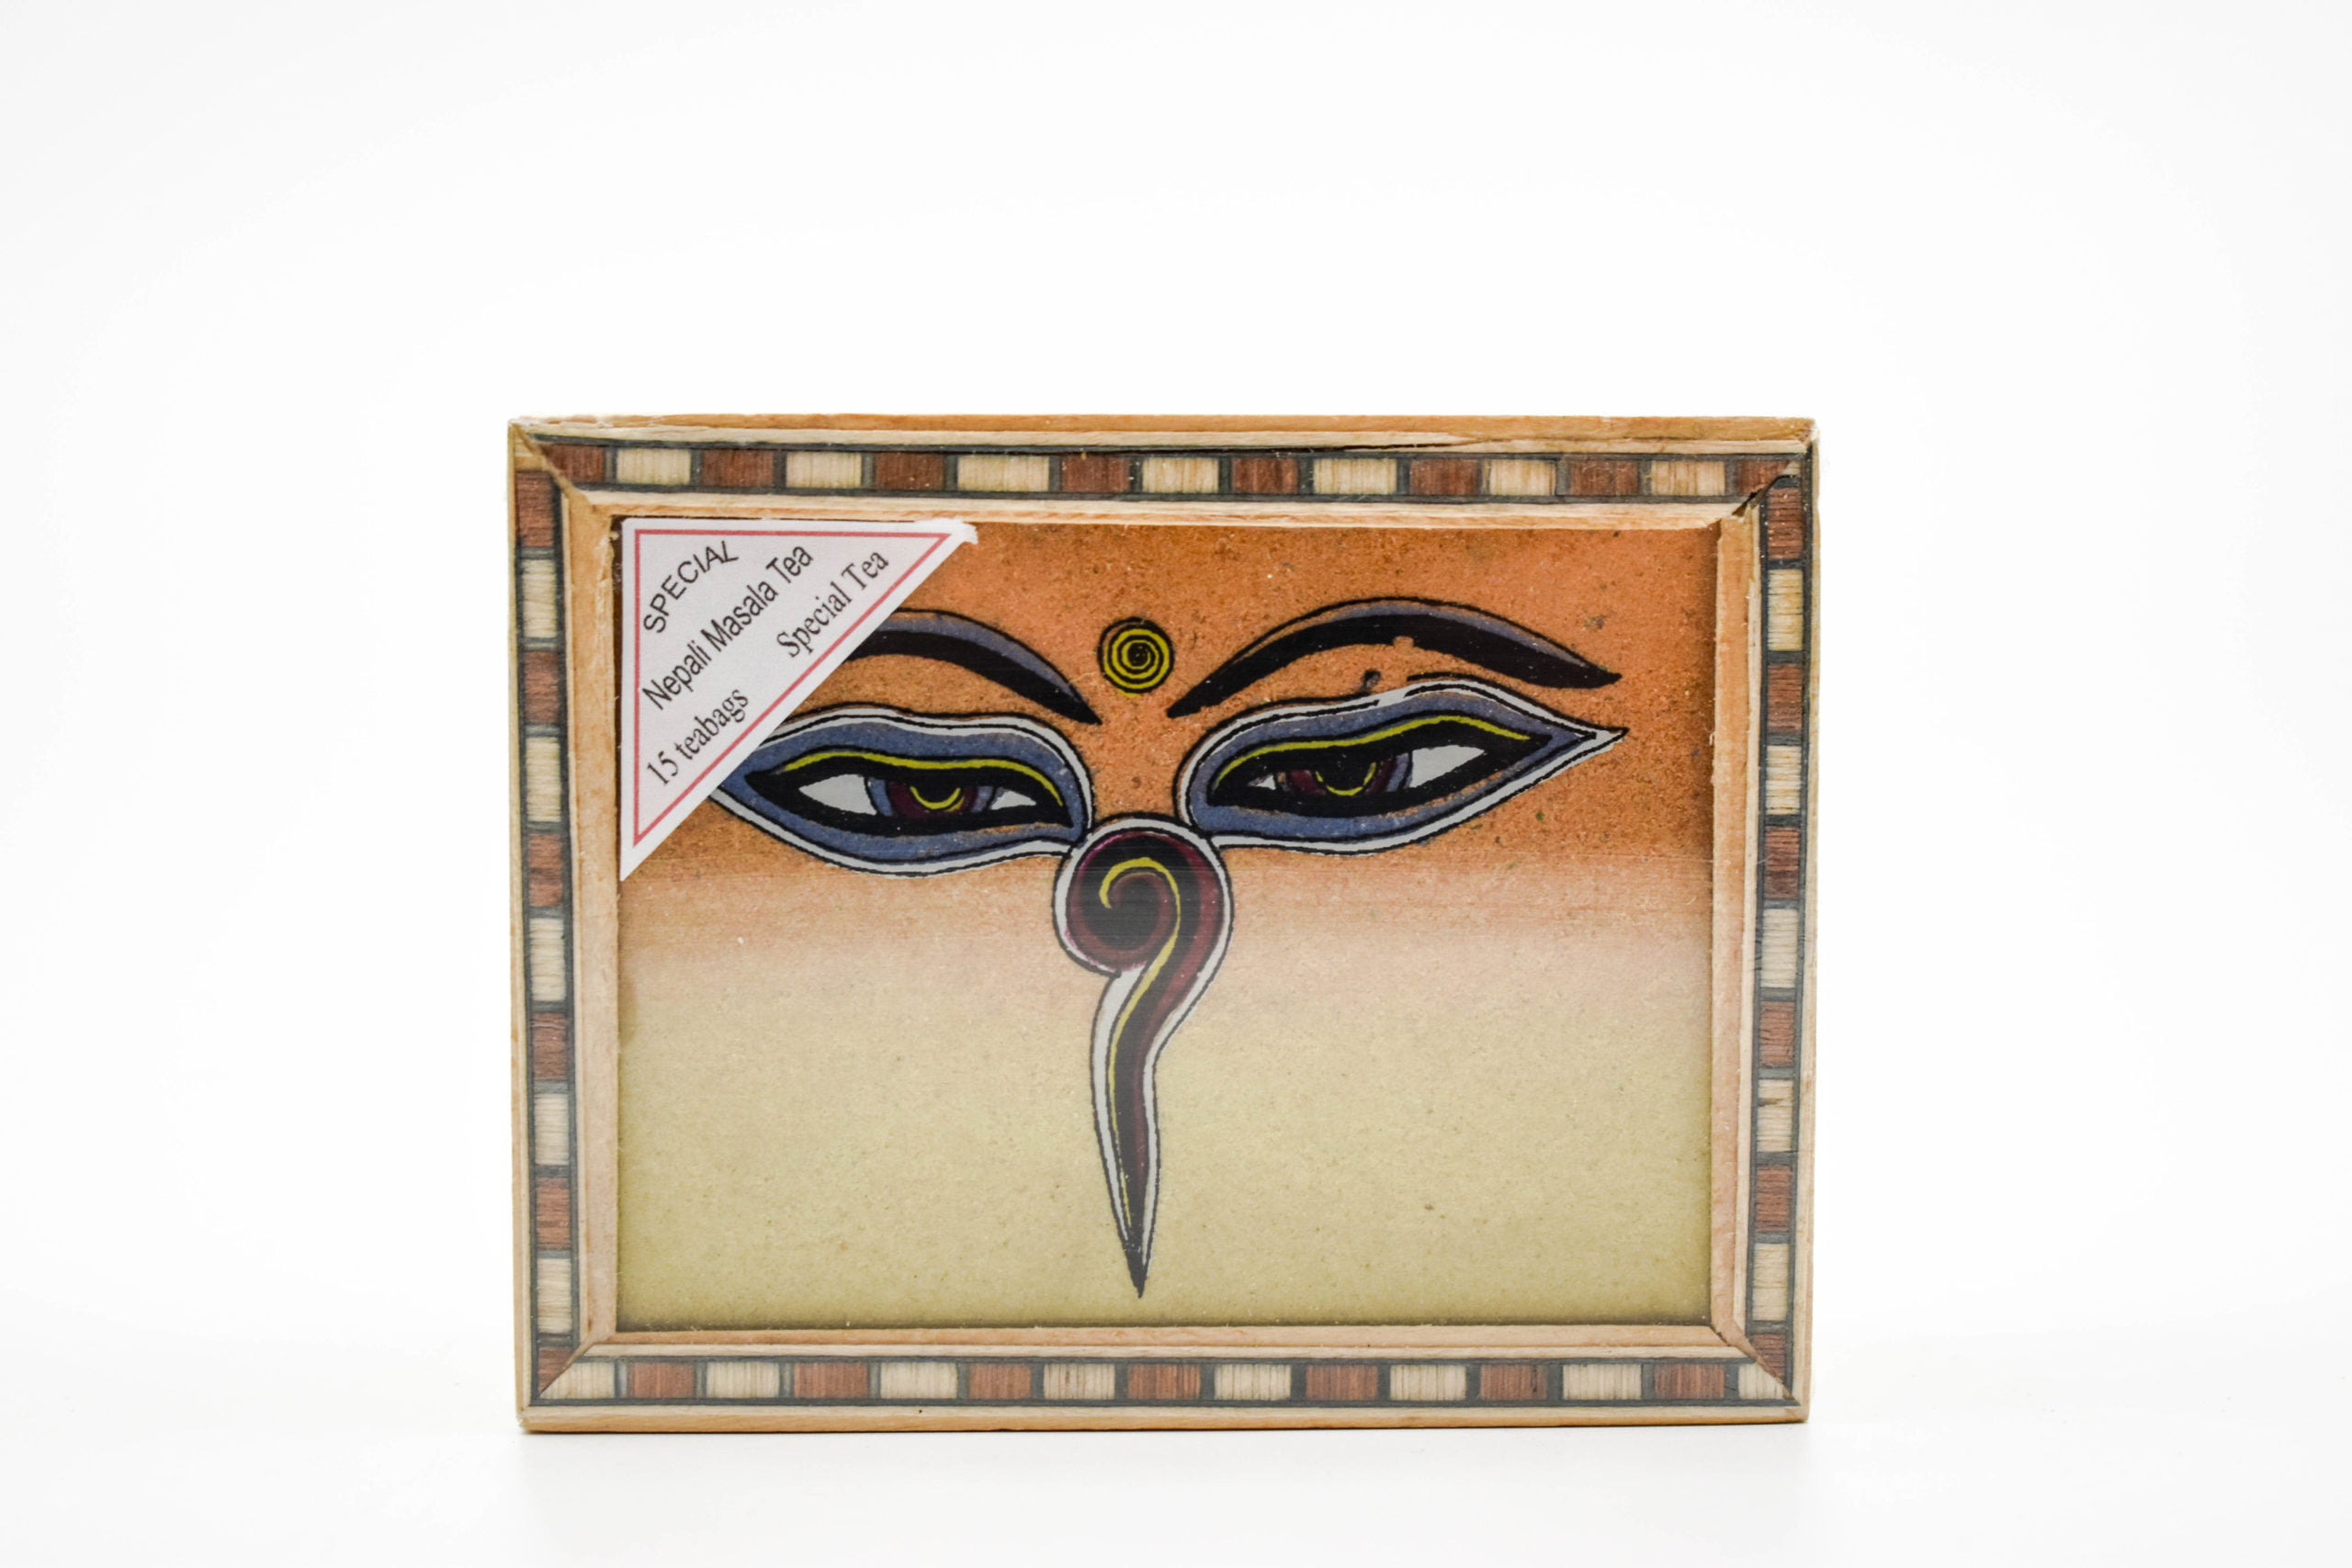 Wooden Darjeerling Tea Gift Box - Third Eye, 15 bags